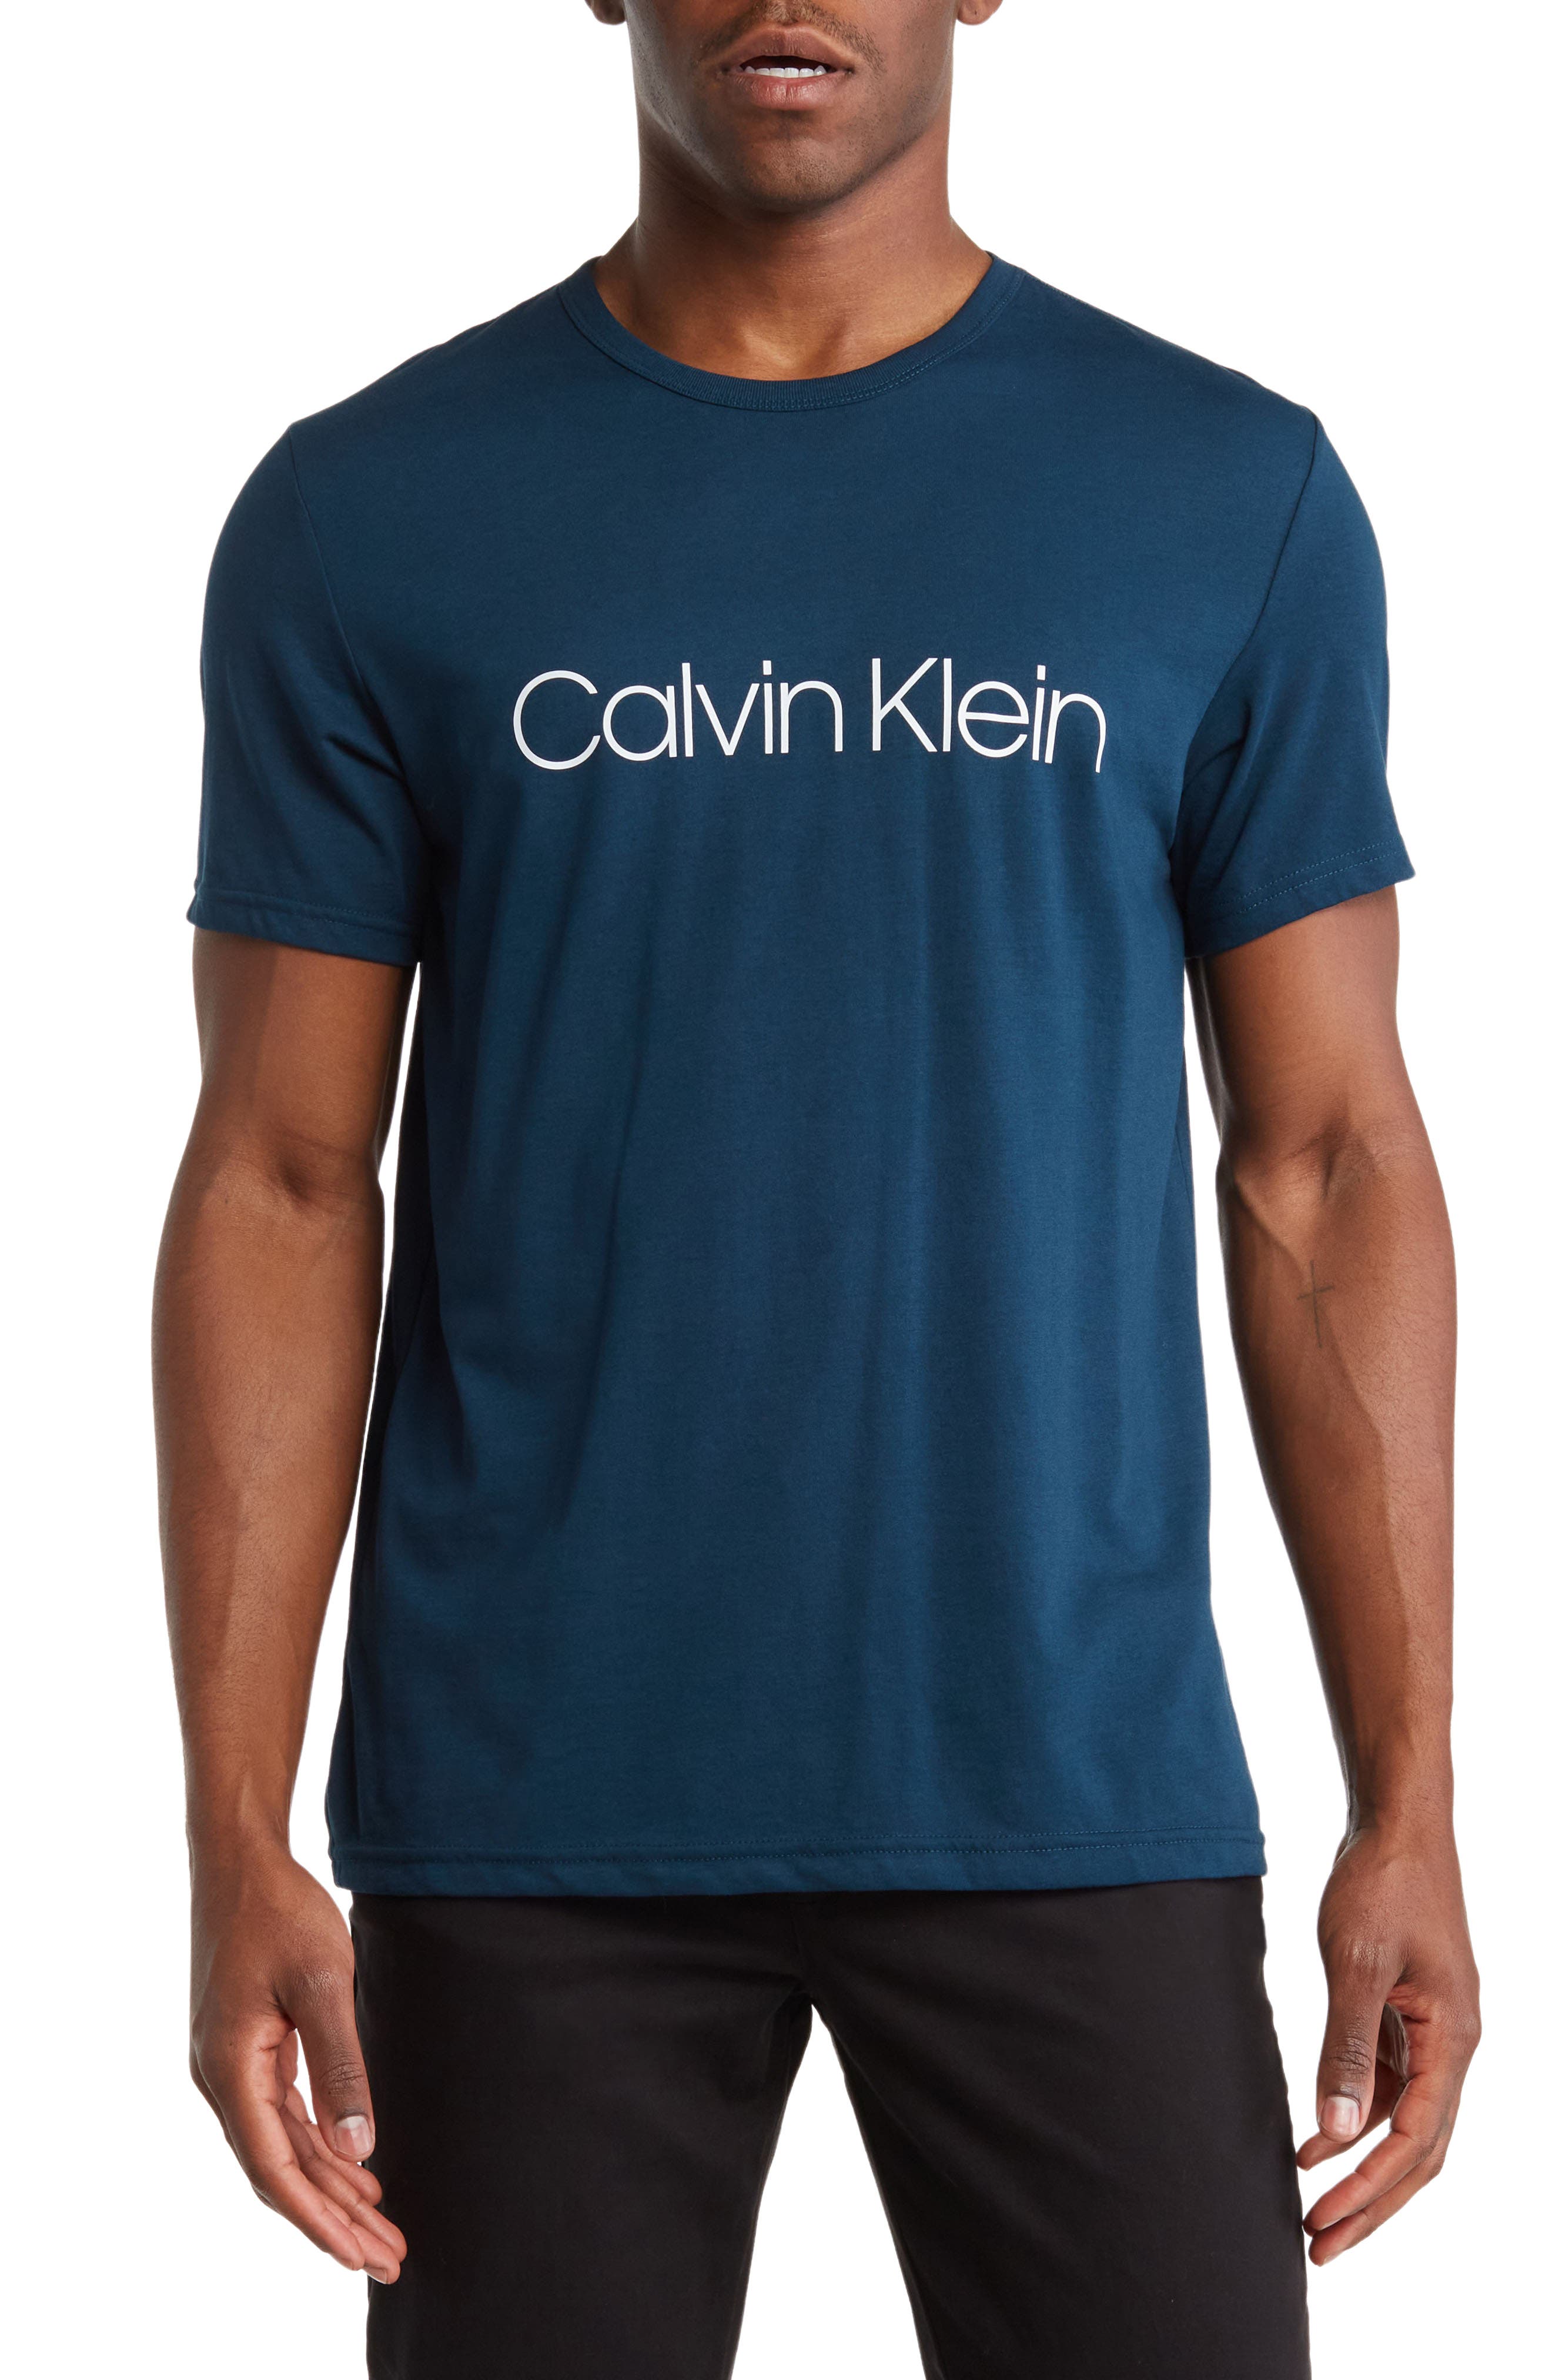 Marque  Calvin KleinCalvin Klein Chausette 1 paire socquette trunk homme coton CK article ECR106 